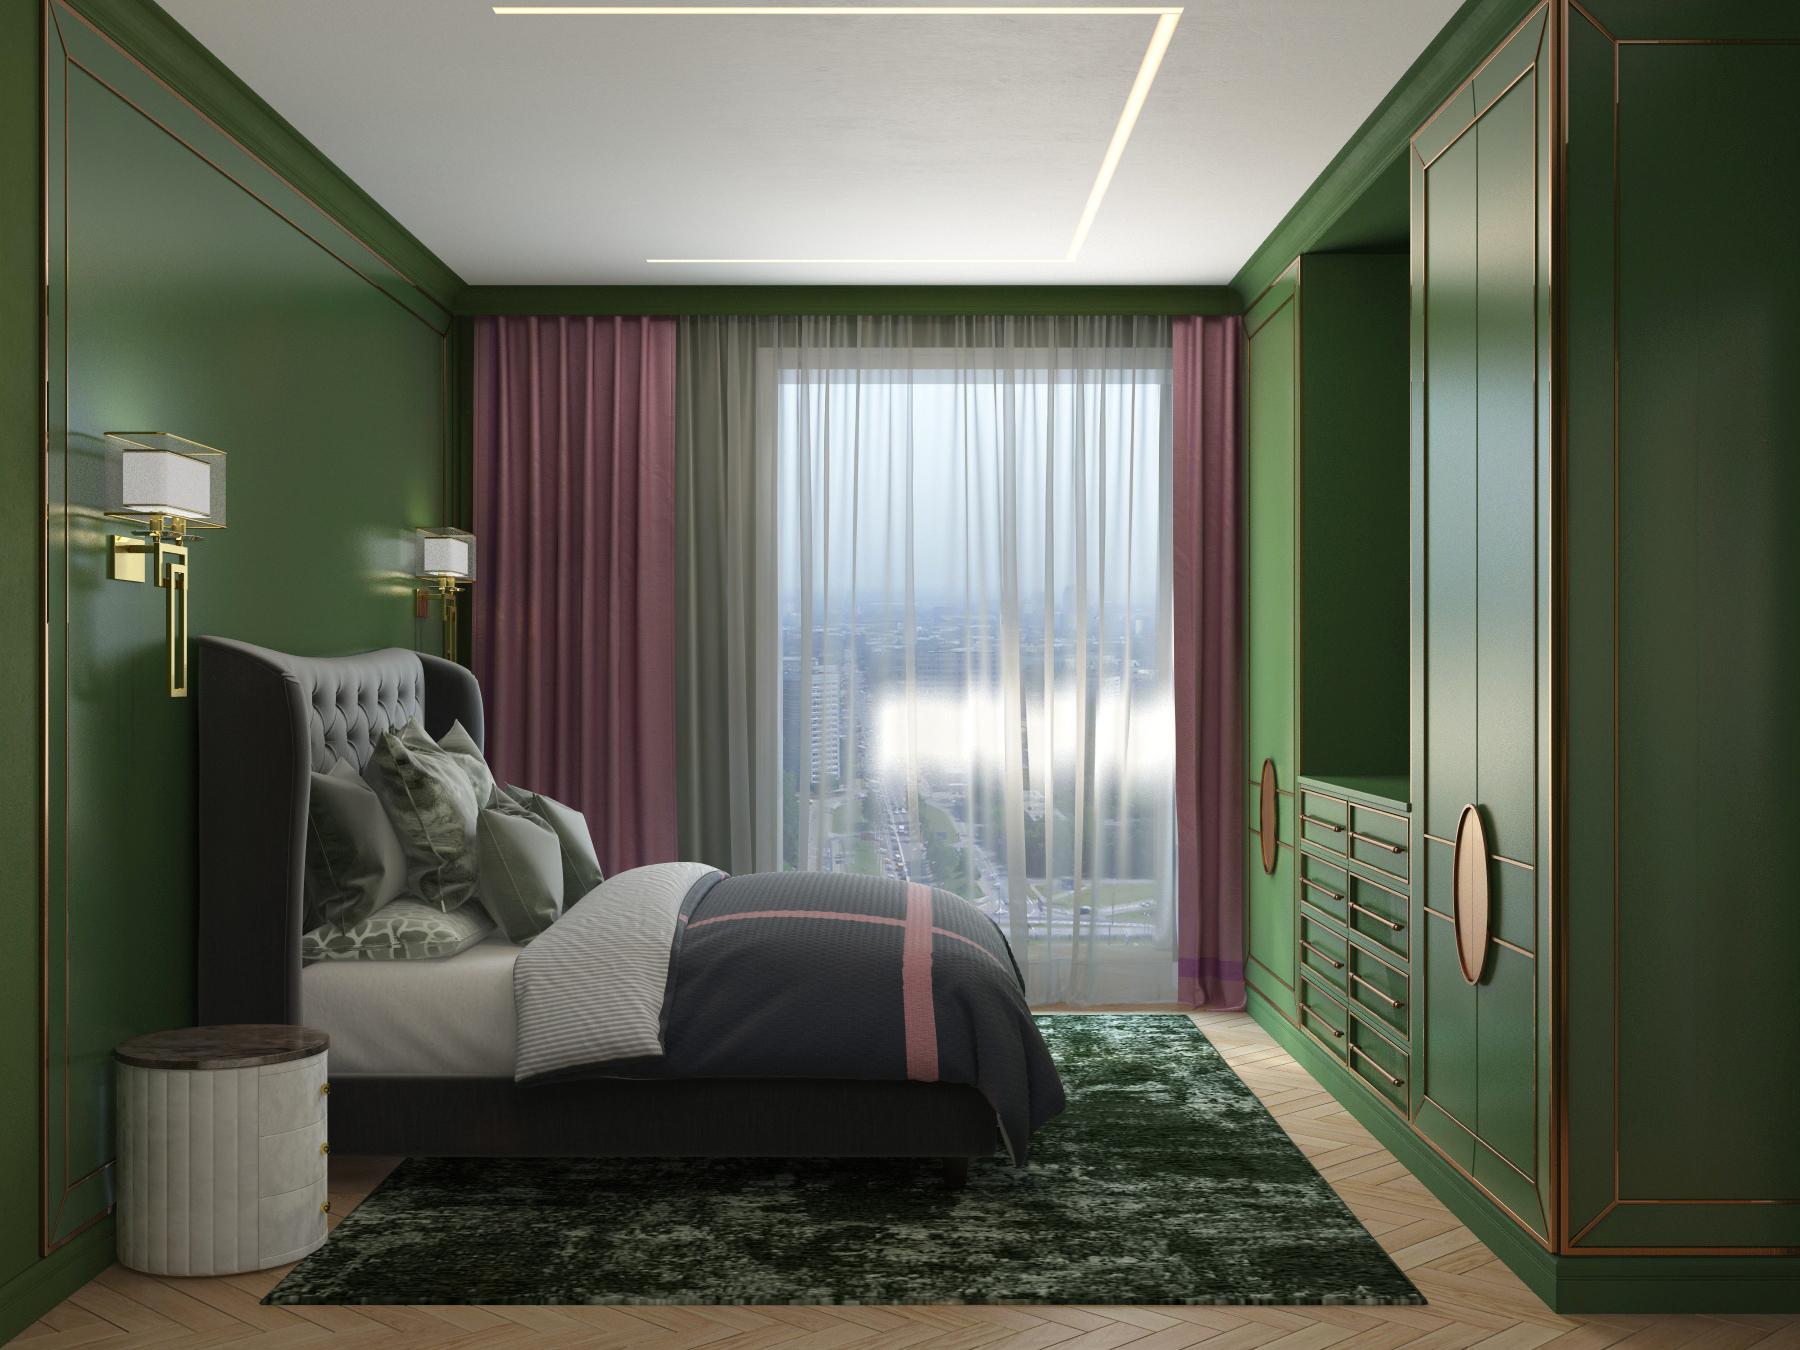 Интерьер спальни cветовыми линиями, рейками с подсветкой, подсветкой настенной, подсветкой светодиодной и с подсветкой